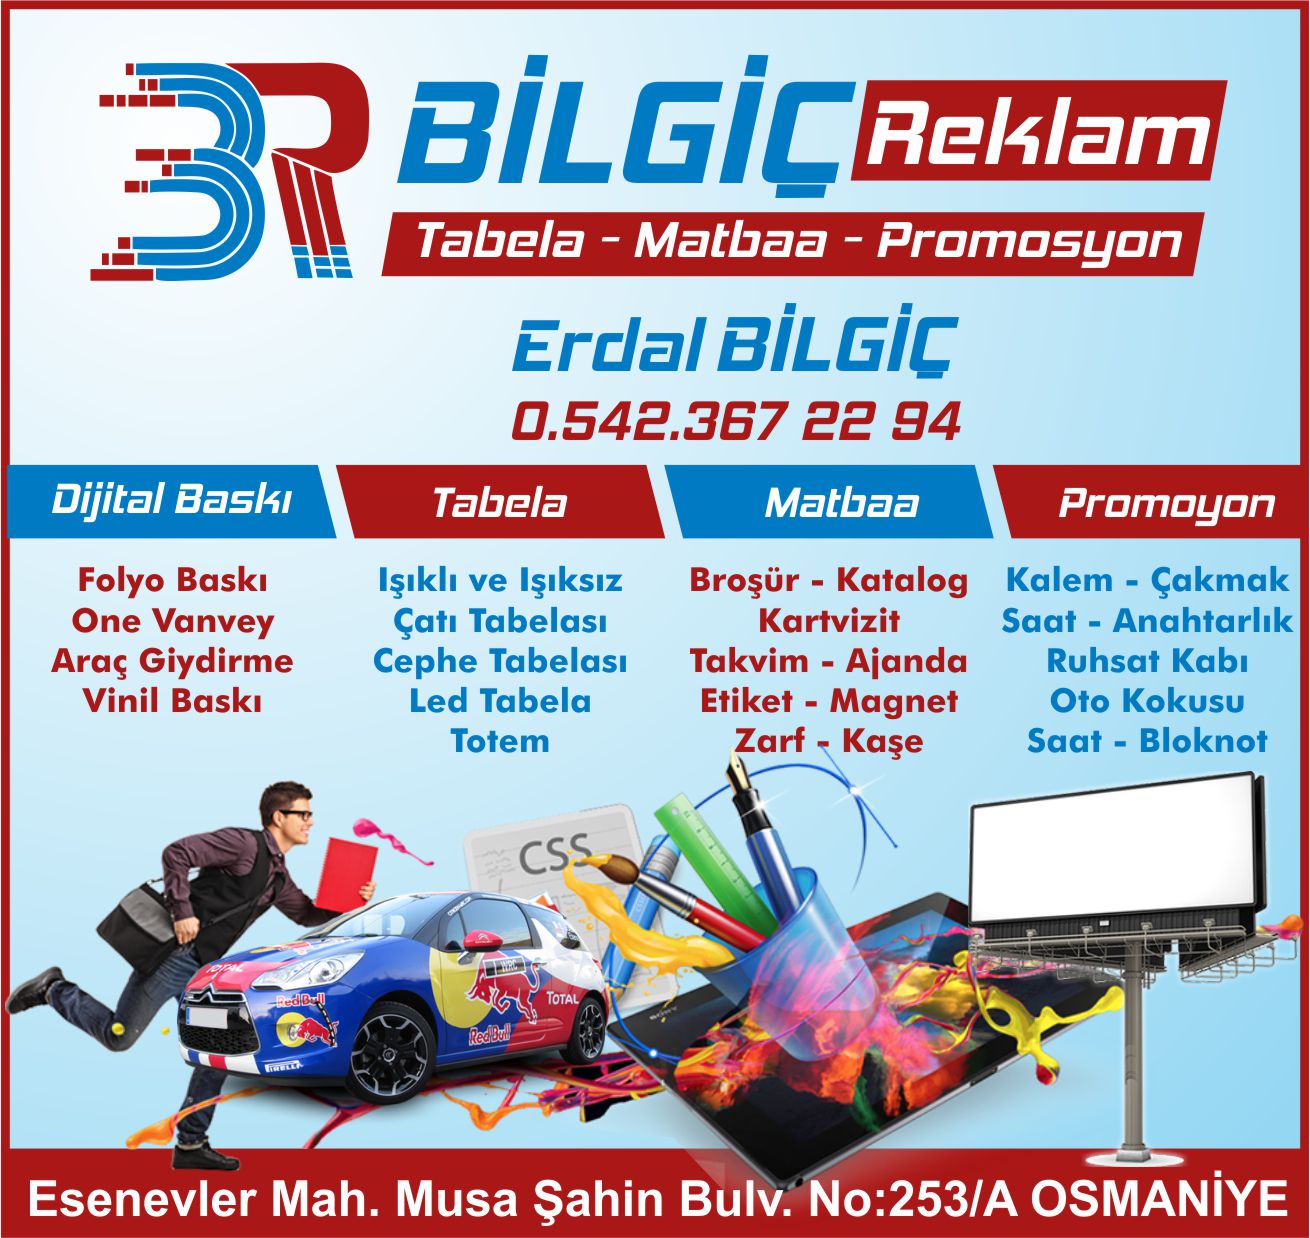 bilgic-reklam-osmaniye